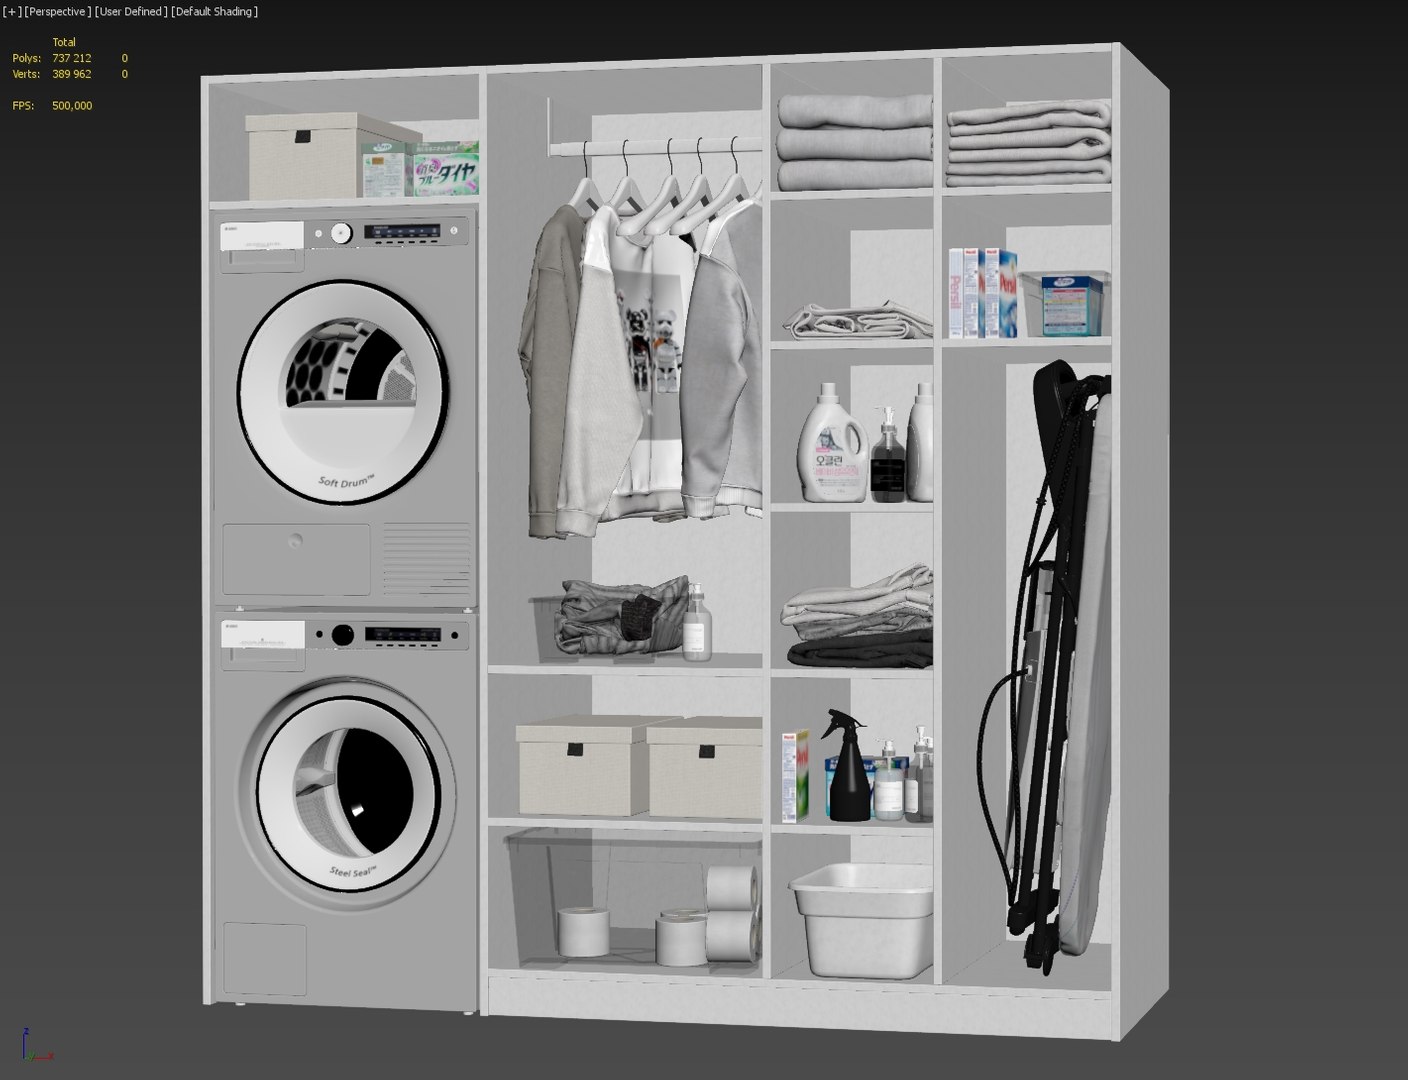 Laundry Room 0004 3D model - TurboSquid 1790460